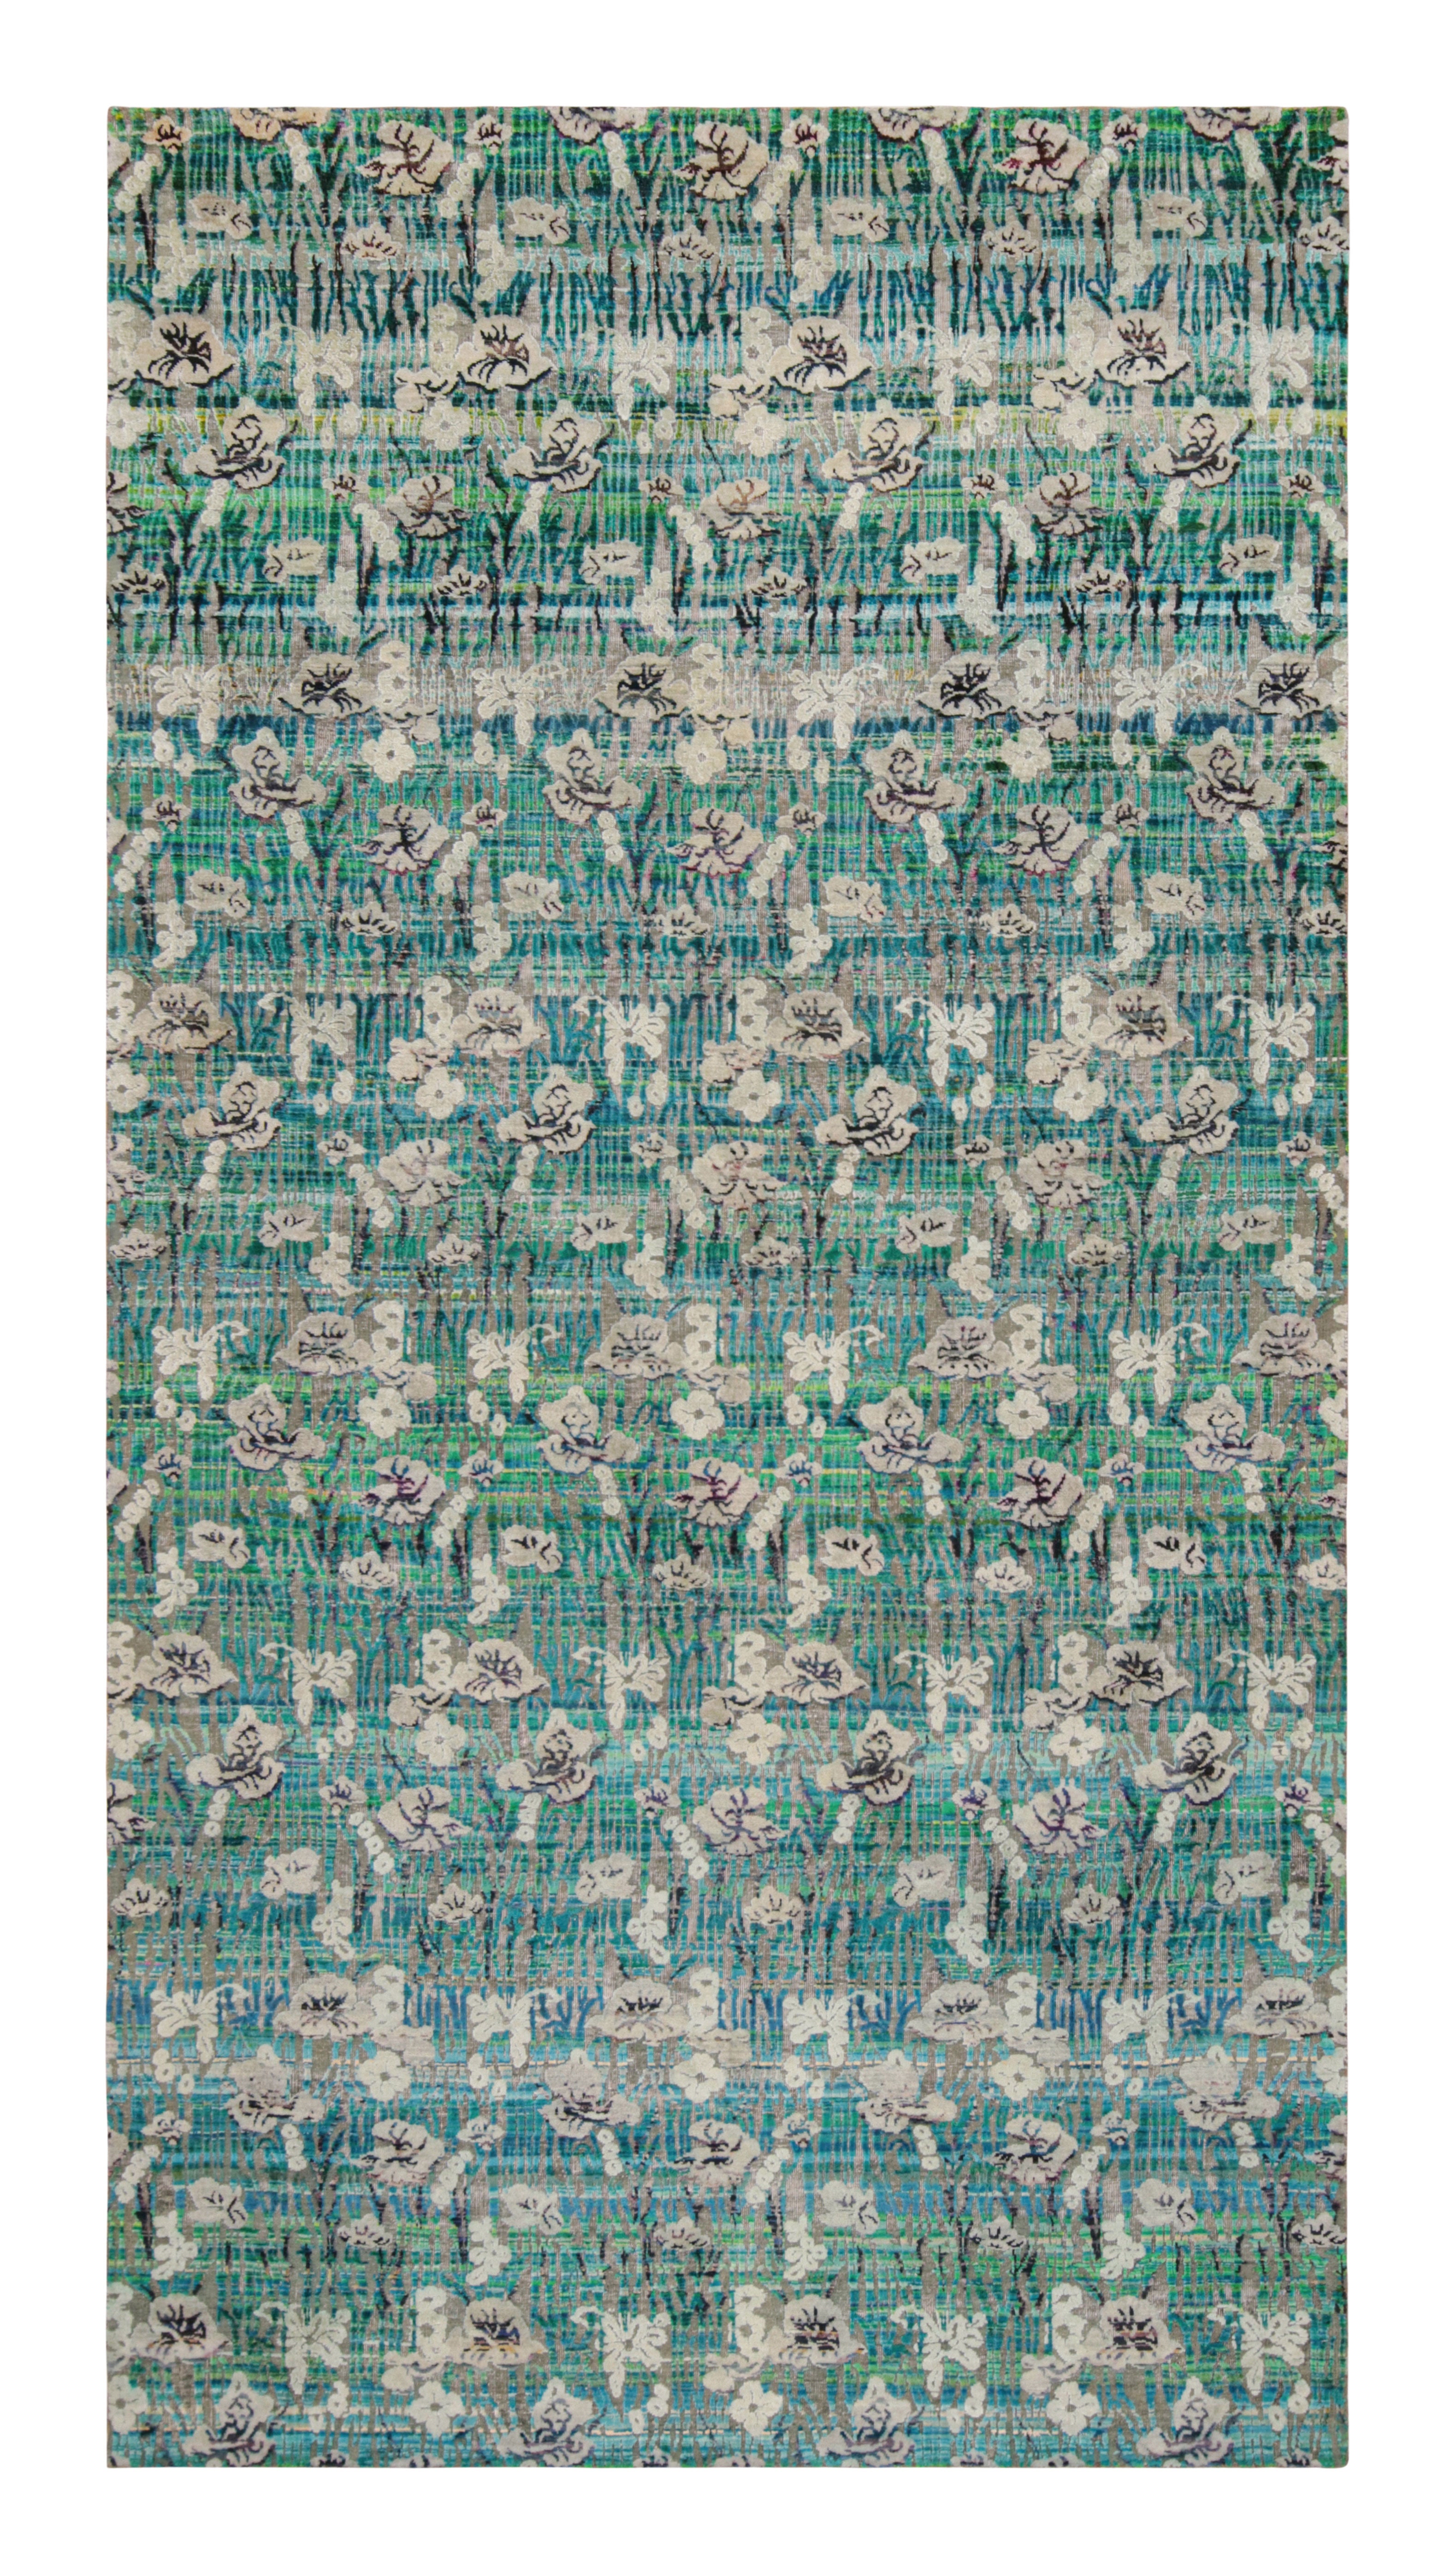 Moderner handgeknüpfter floraler Teppich aus Seide in Grün, Blau und Grau mit Muster von Teppich & Kelim